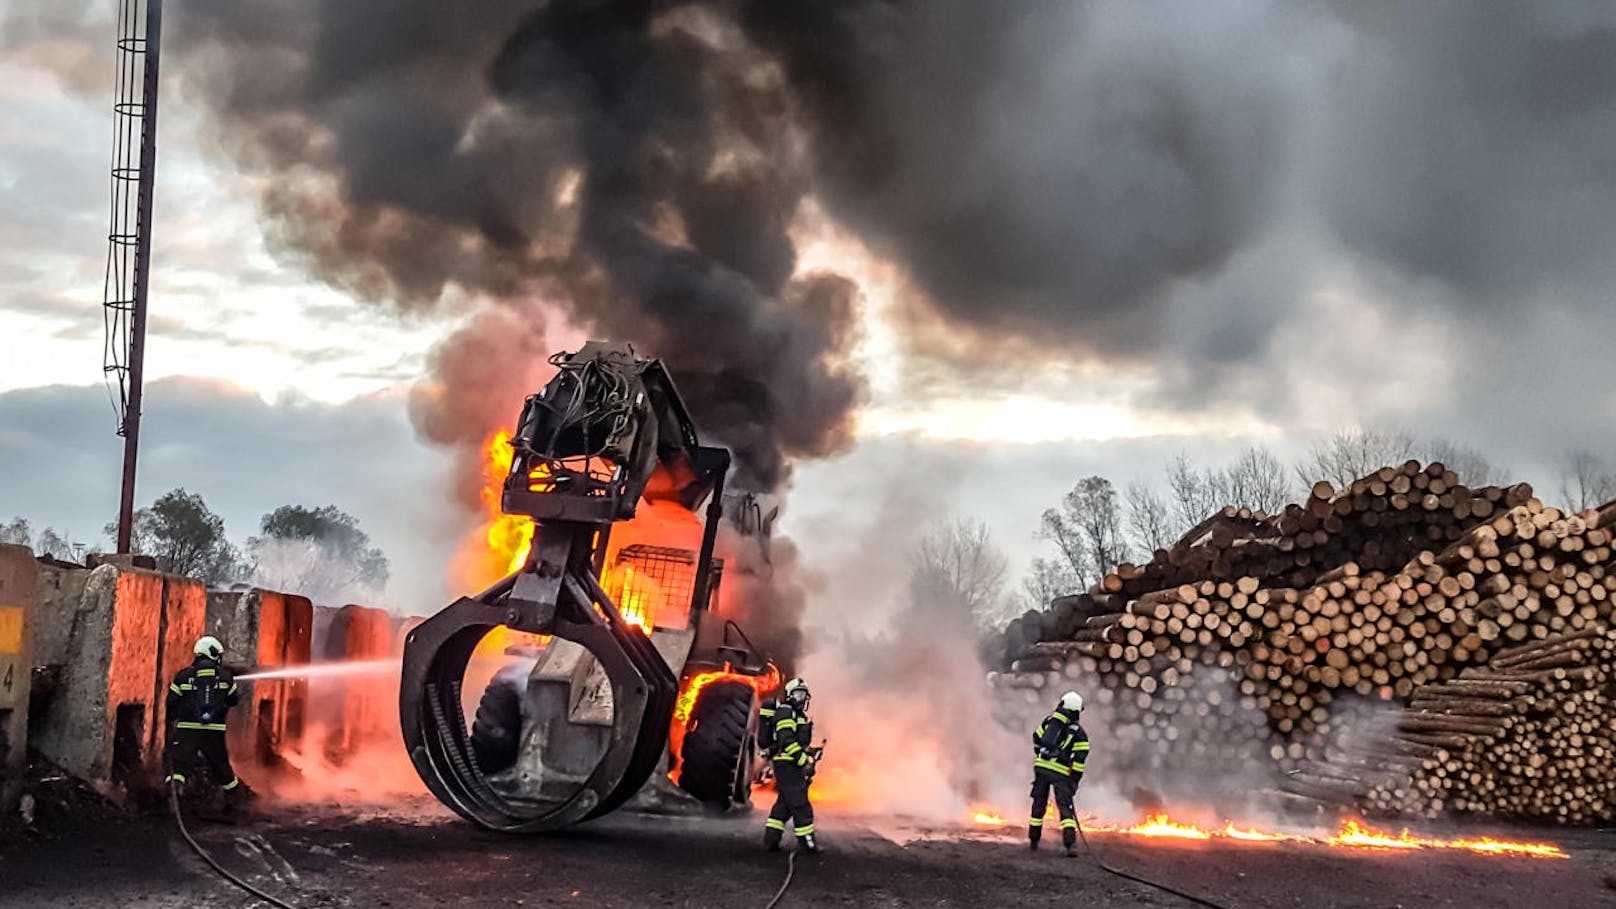 Der Radlader wurde durch die Flammen völlig zerstört.